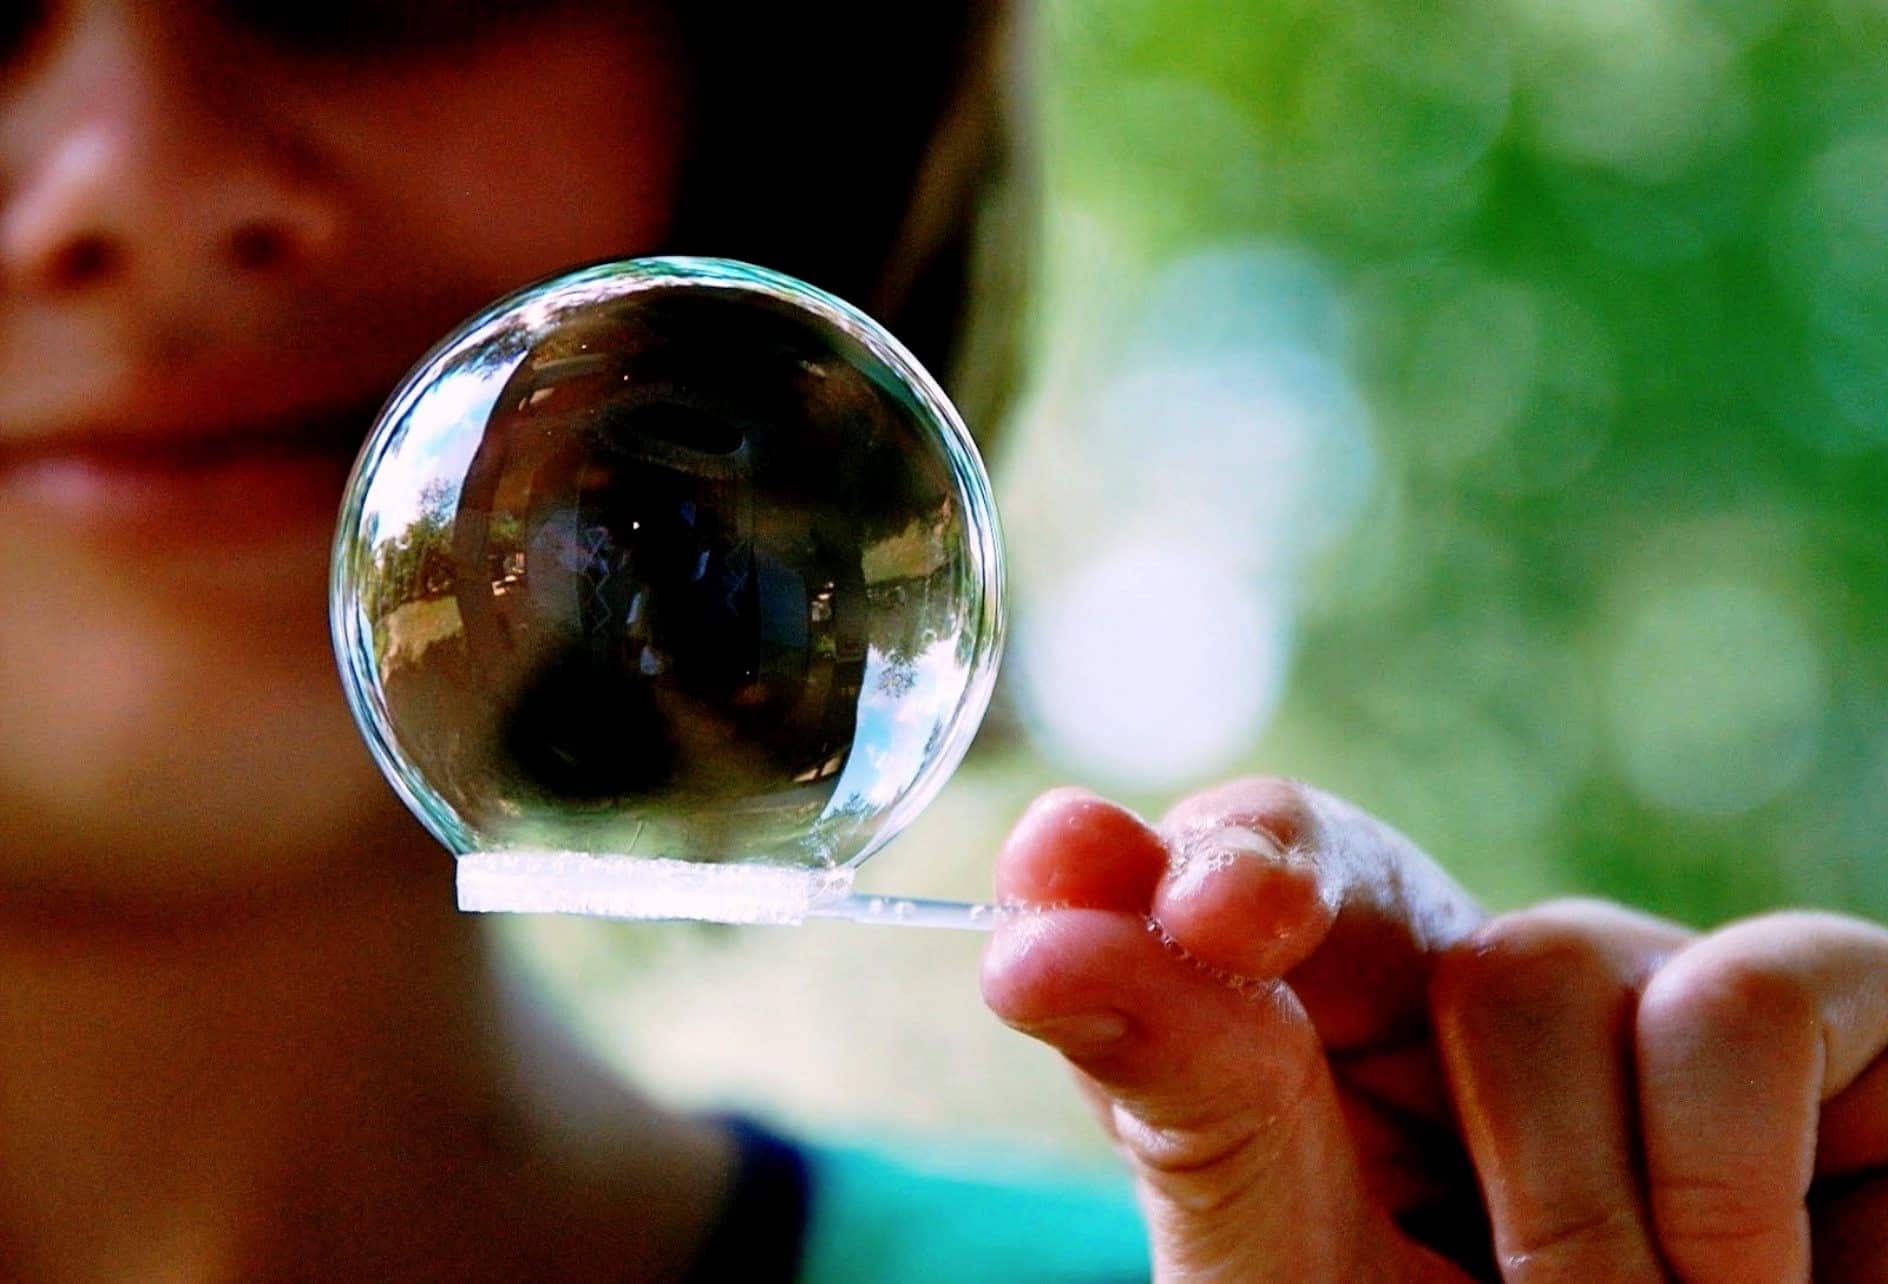 Рецепты мыльных пузырей в домашних условиях | Как сделать мыльные пузыри в домашних условиях